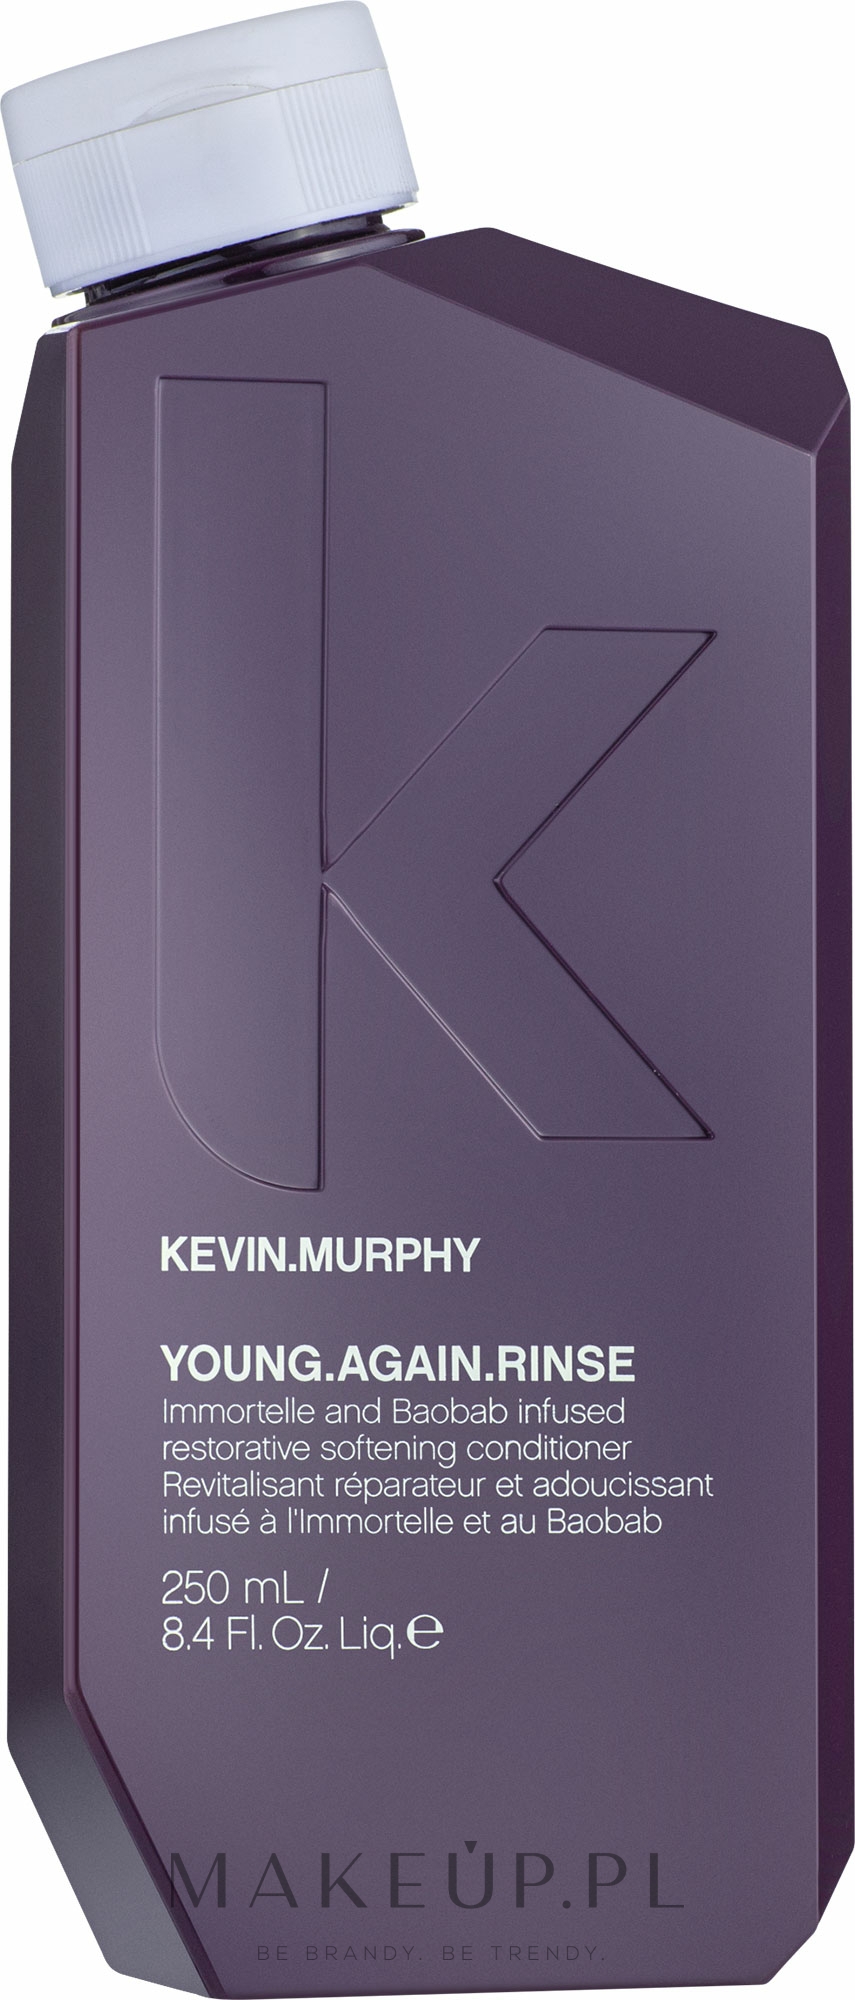 Wzmacniająca odżywka przeciwstarzeniowa - Kevin.Murphy Young.Again Rinse — Zdjęcie 250 ml